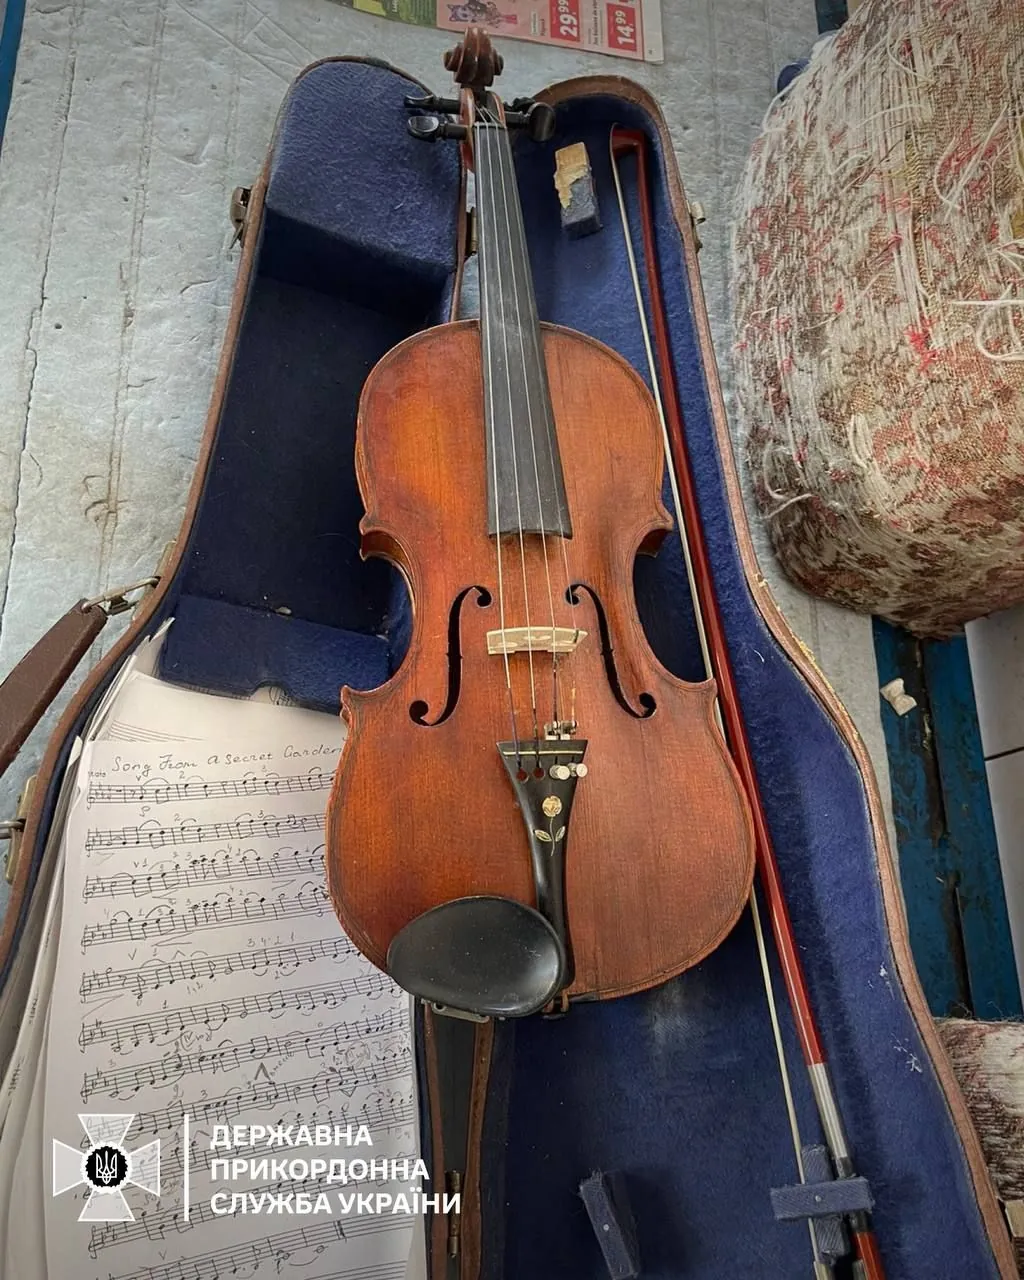 Border guards prevent illegal export of Stradivarius violin to Romania